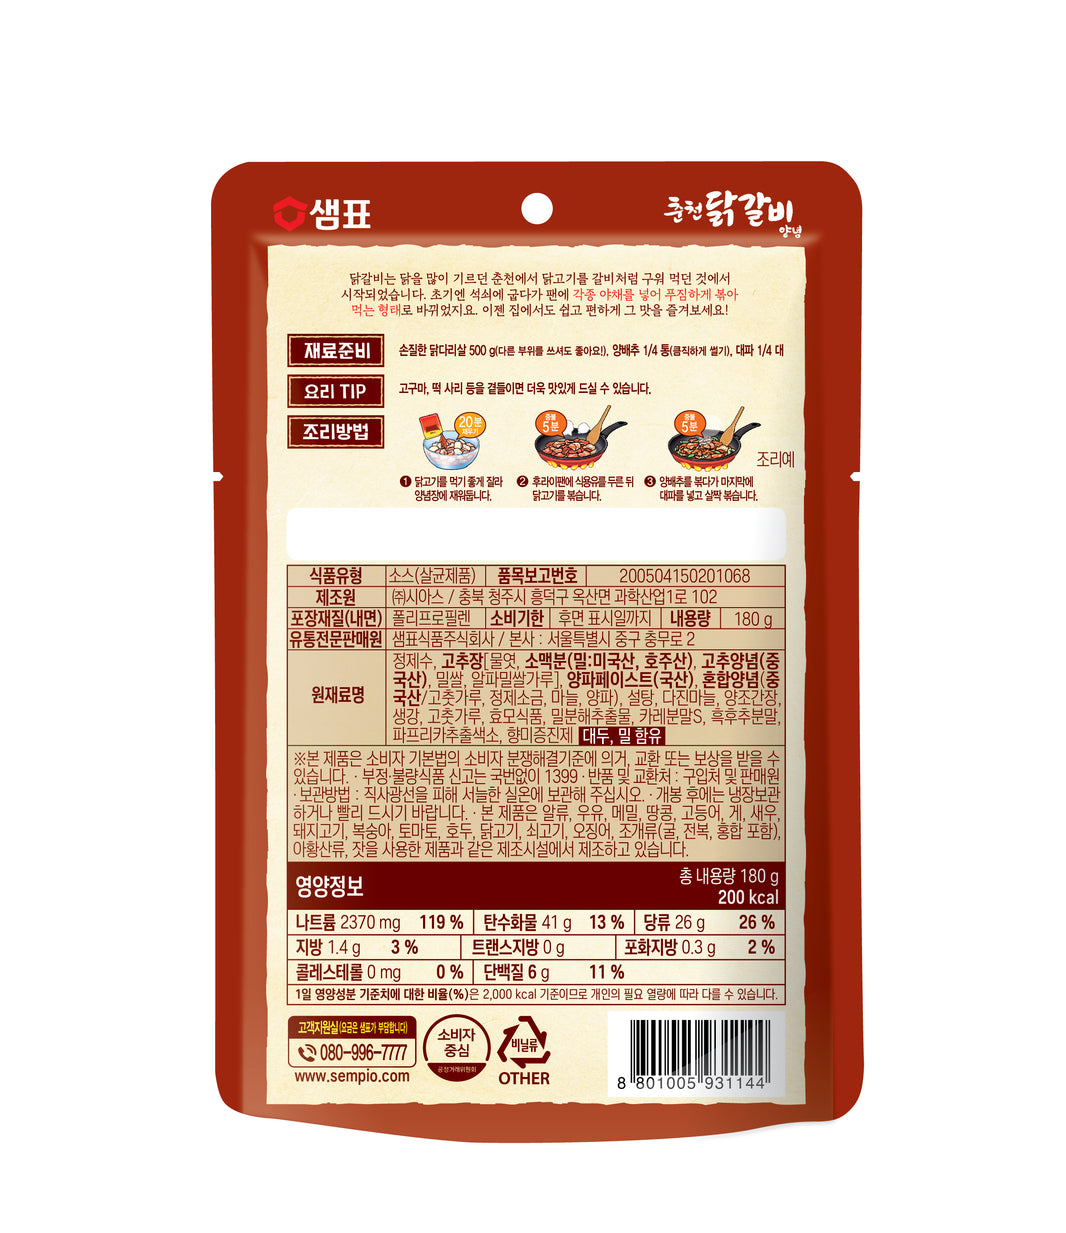 [Sempio] Spicy Chicken Wok Sauce / 샘표 춘천 닭갈비 양념 (180g)